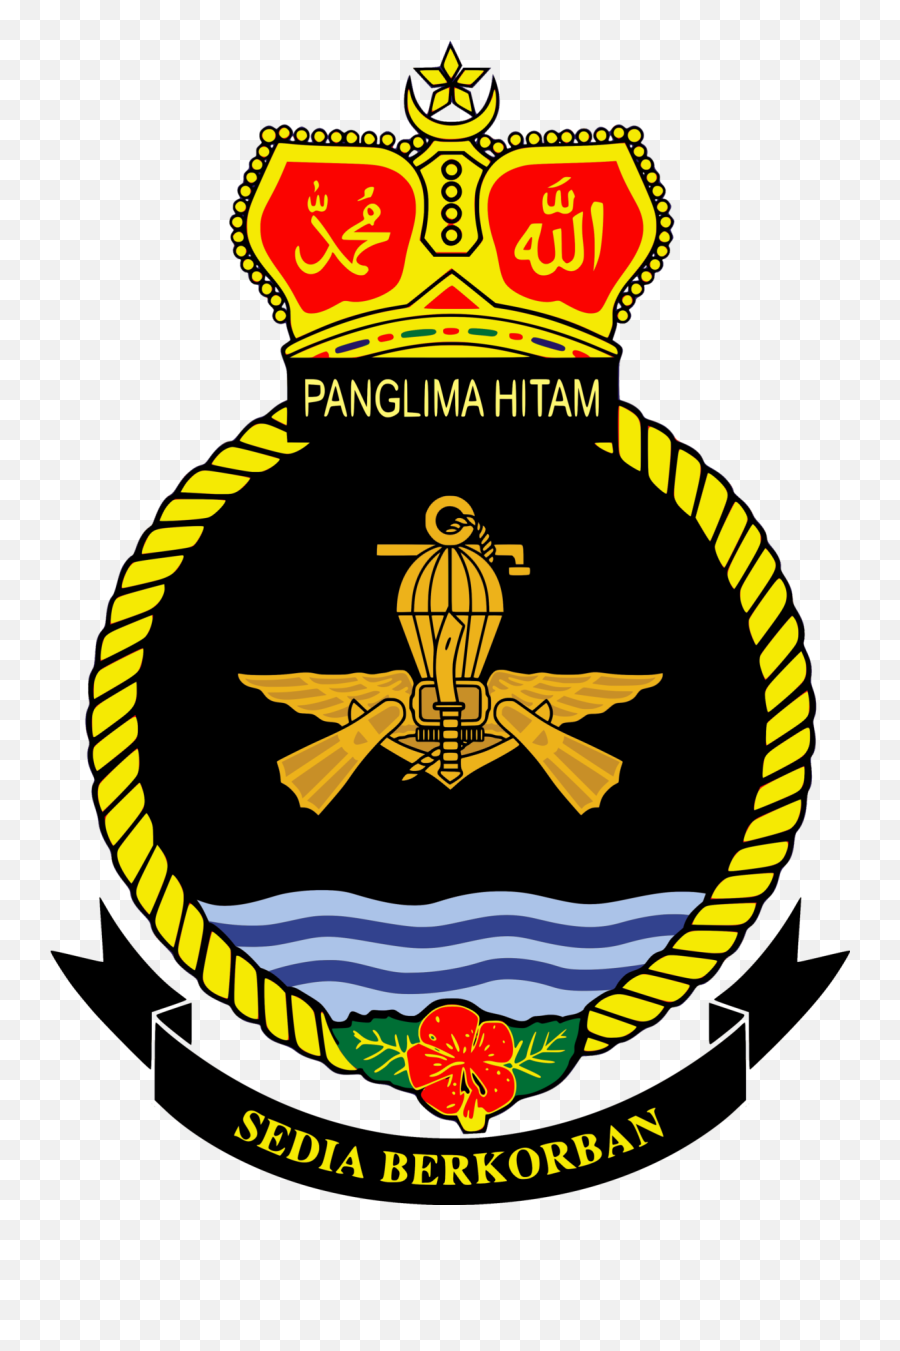 Paskal - Wikipedia Logo Royal Malaysian Navy Png,Armalite Logo